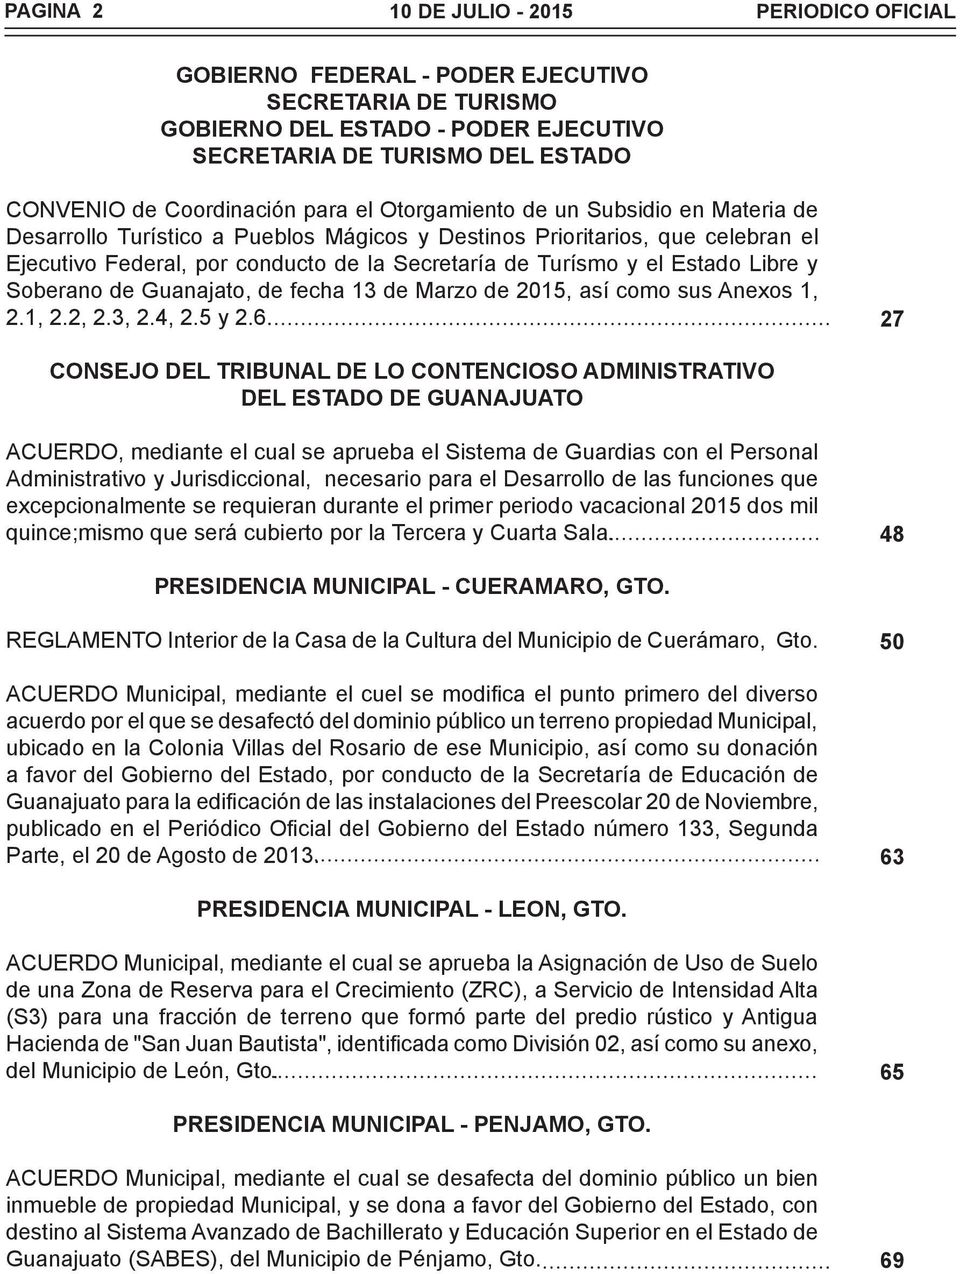 Estado Libre y Soberano de Guanajato, de fecha 13 de Marzo de 2015, así como sus Anexos 1, 2.1, 2.2, 2.3, 2.4, 2.5 y 2.6.